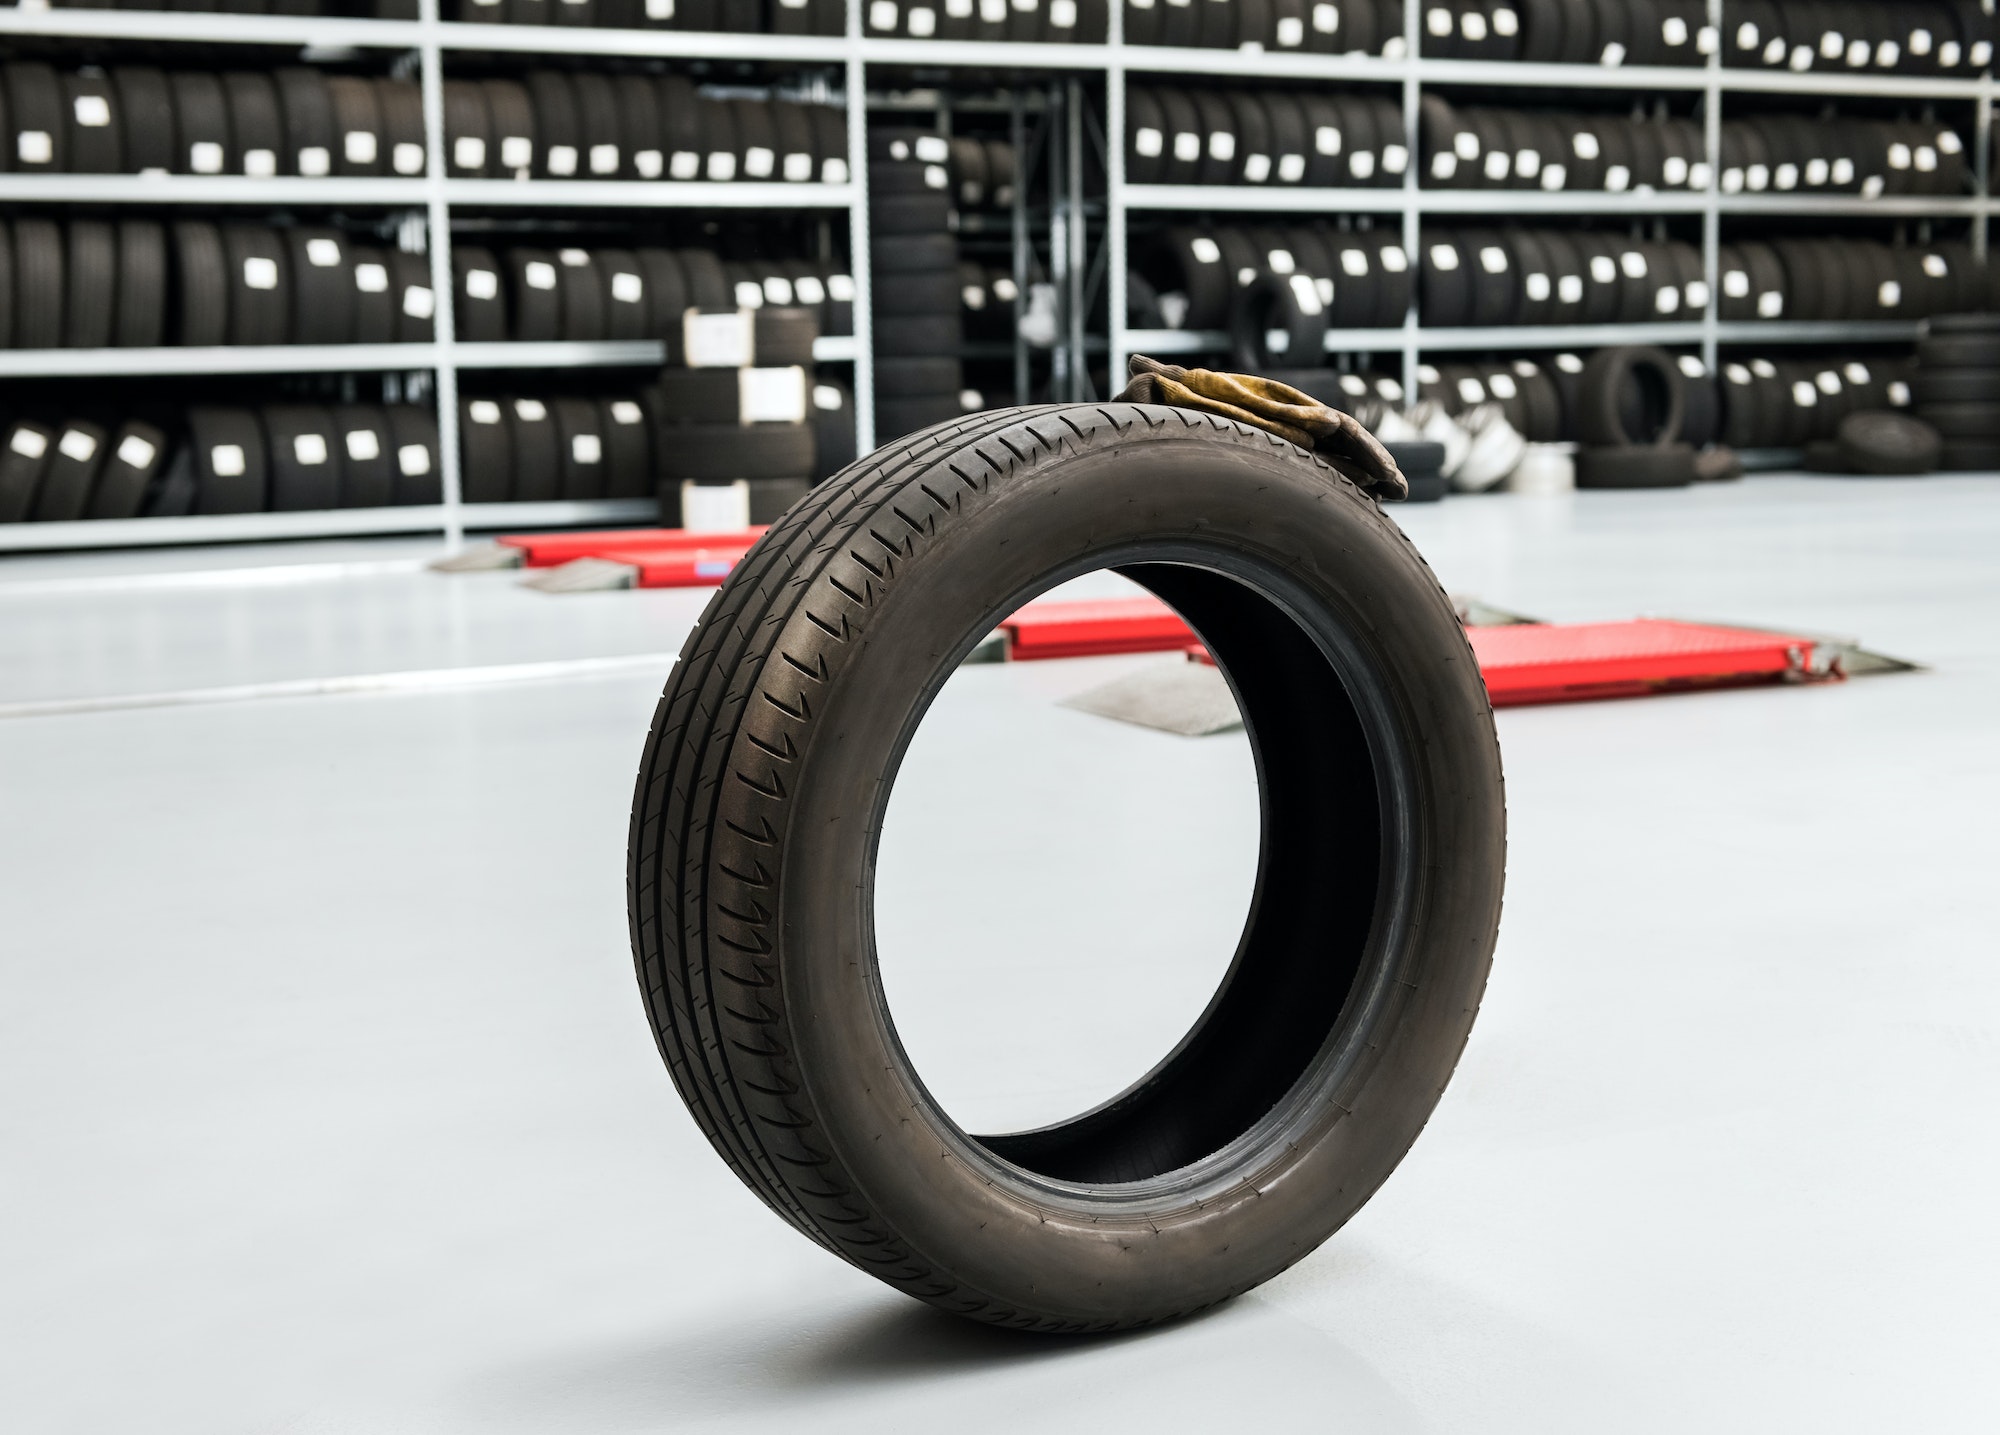 Cómo guardar neumáticos en el garaje con o sin llantas